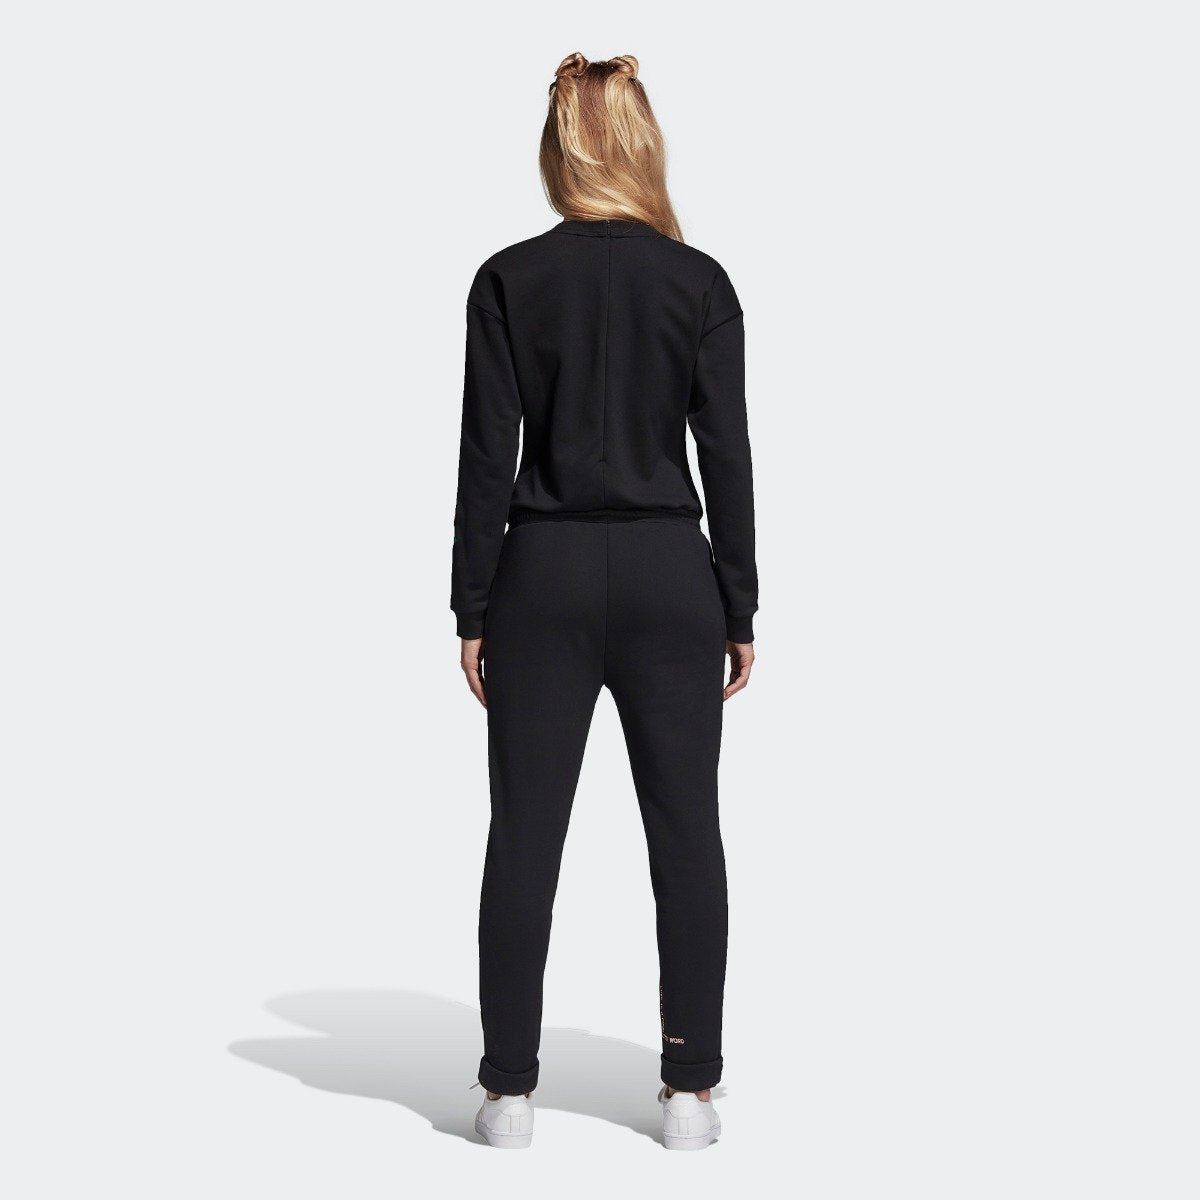 Women's Adidas Originals Jumpsuit Black 